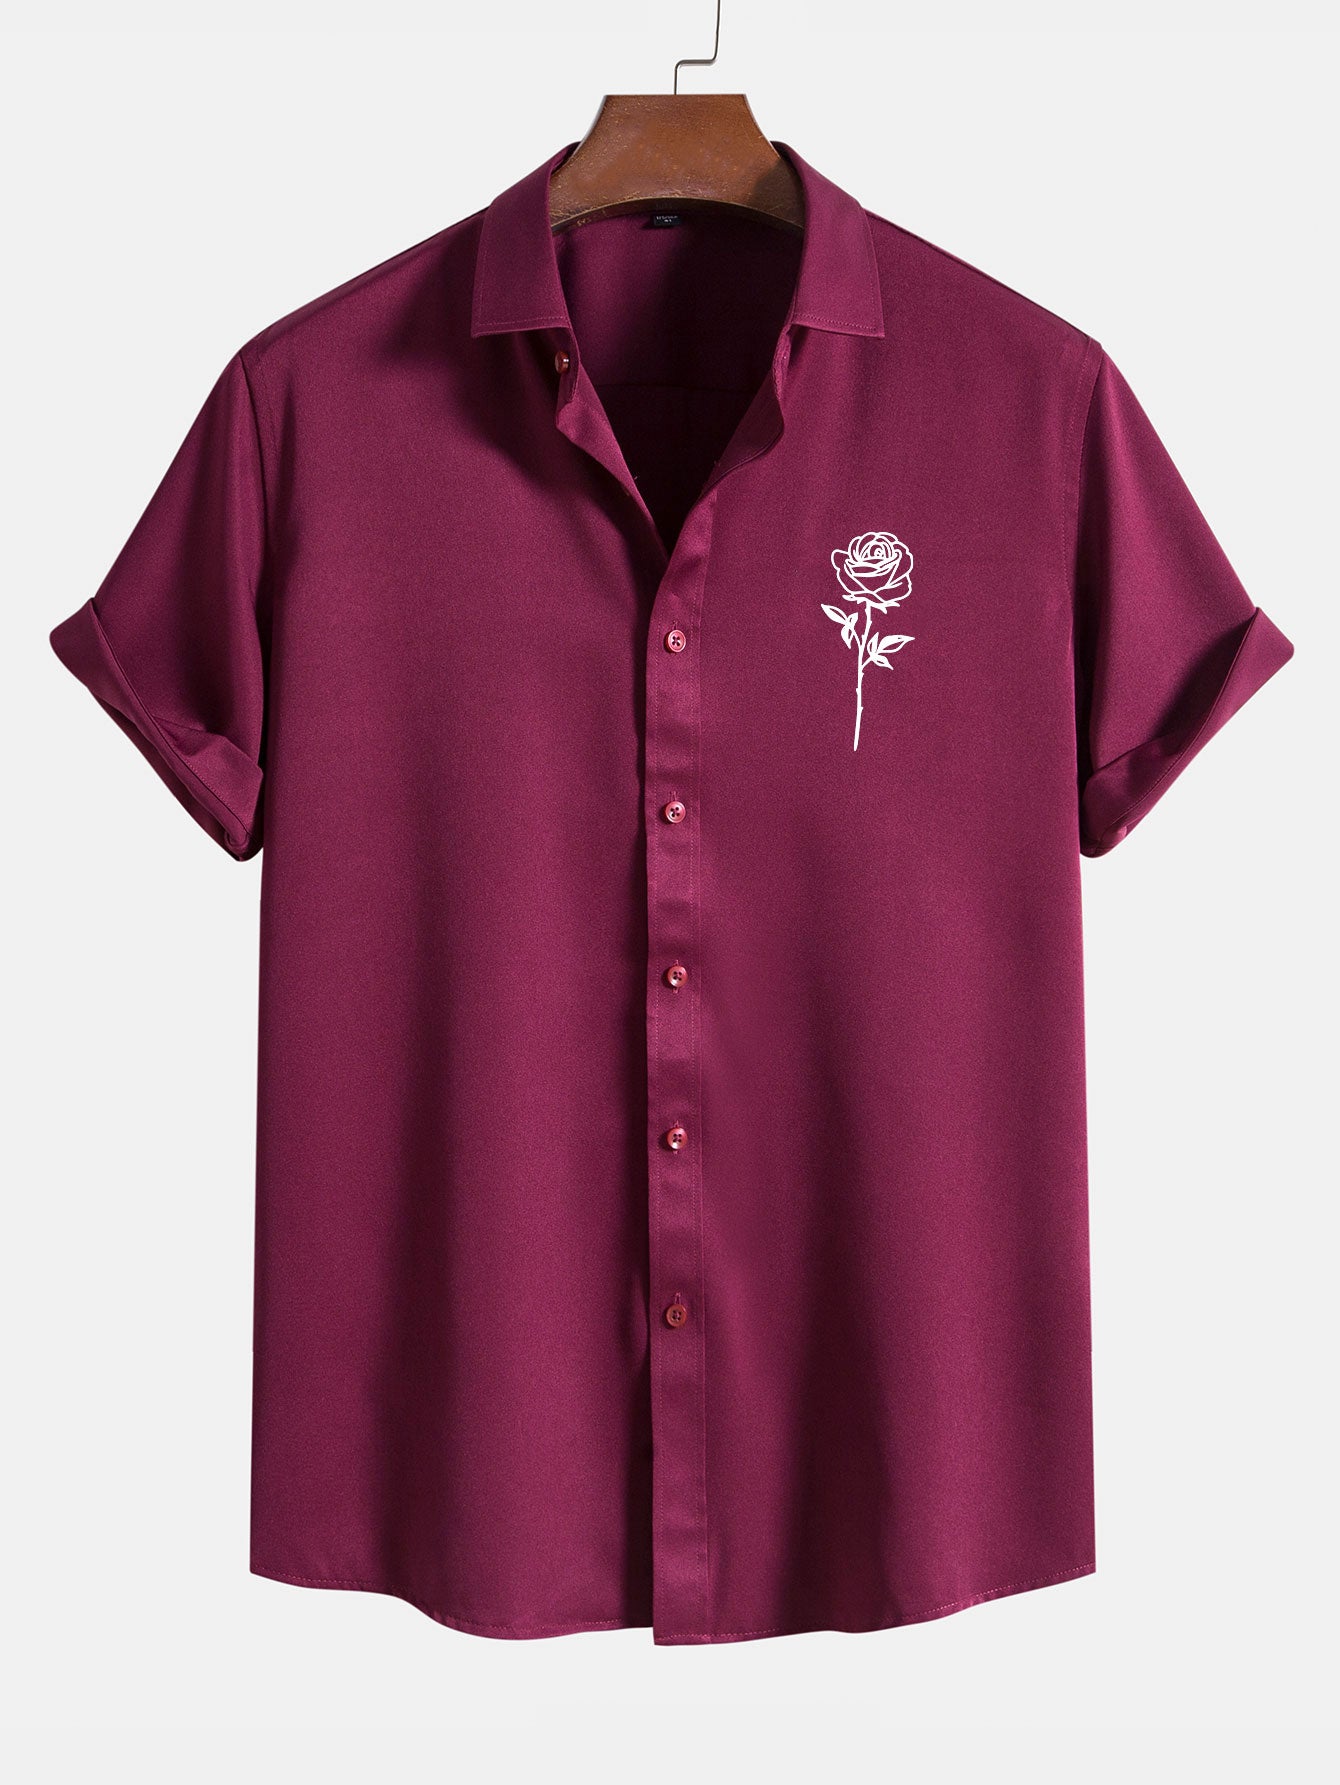 Rose Print Short Sleeve Shirts